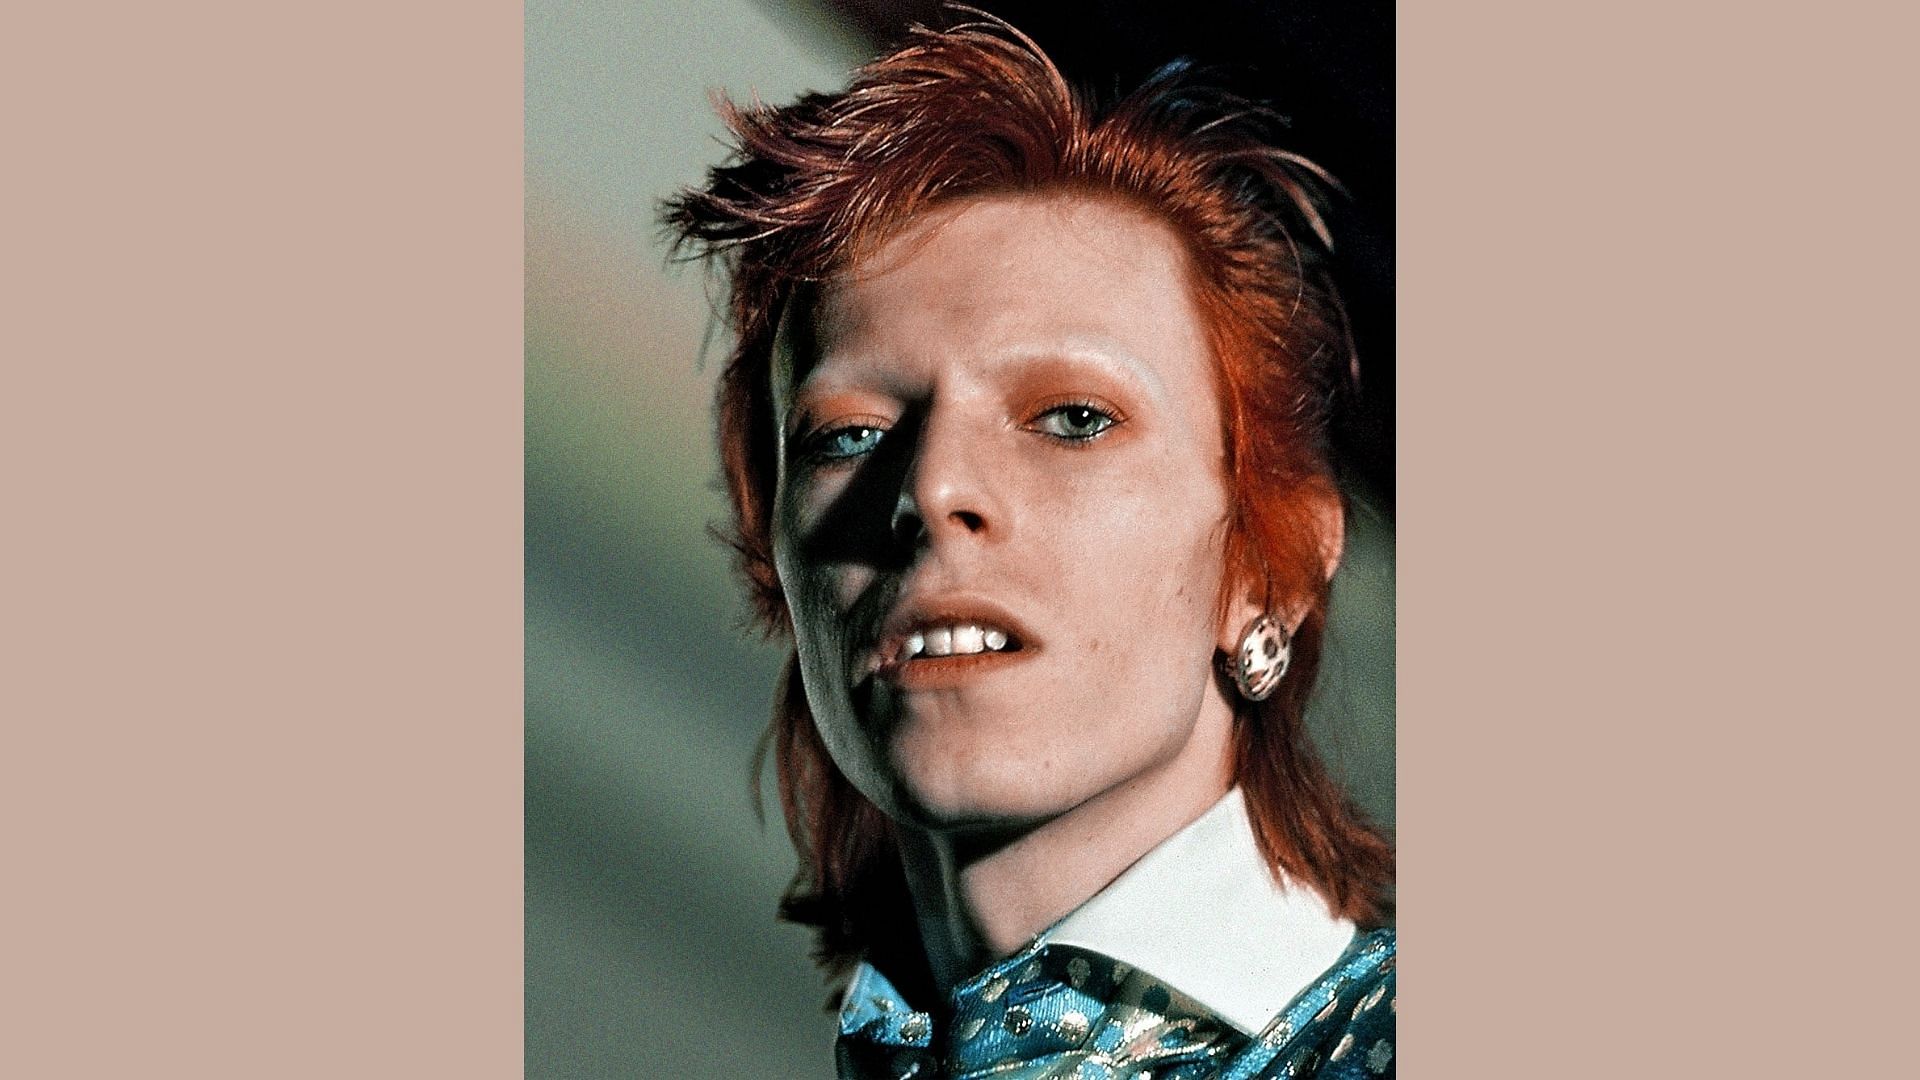 <div class="paragraphs"><p>David Bowie.</p></div>